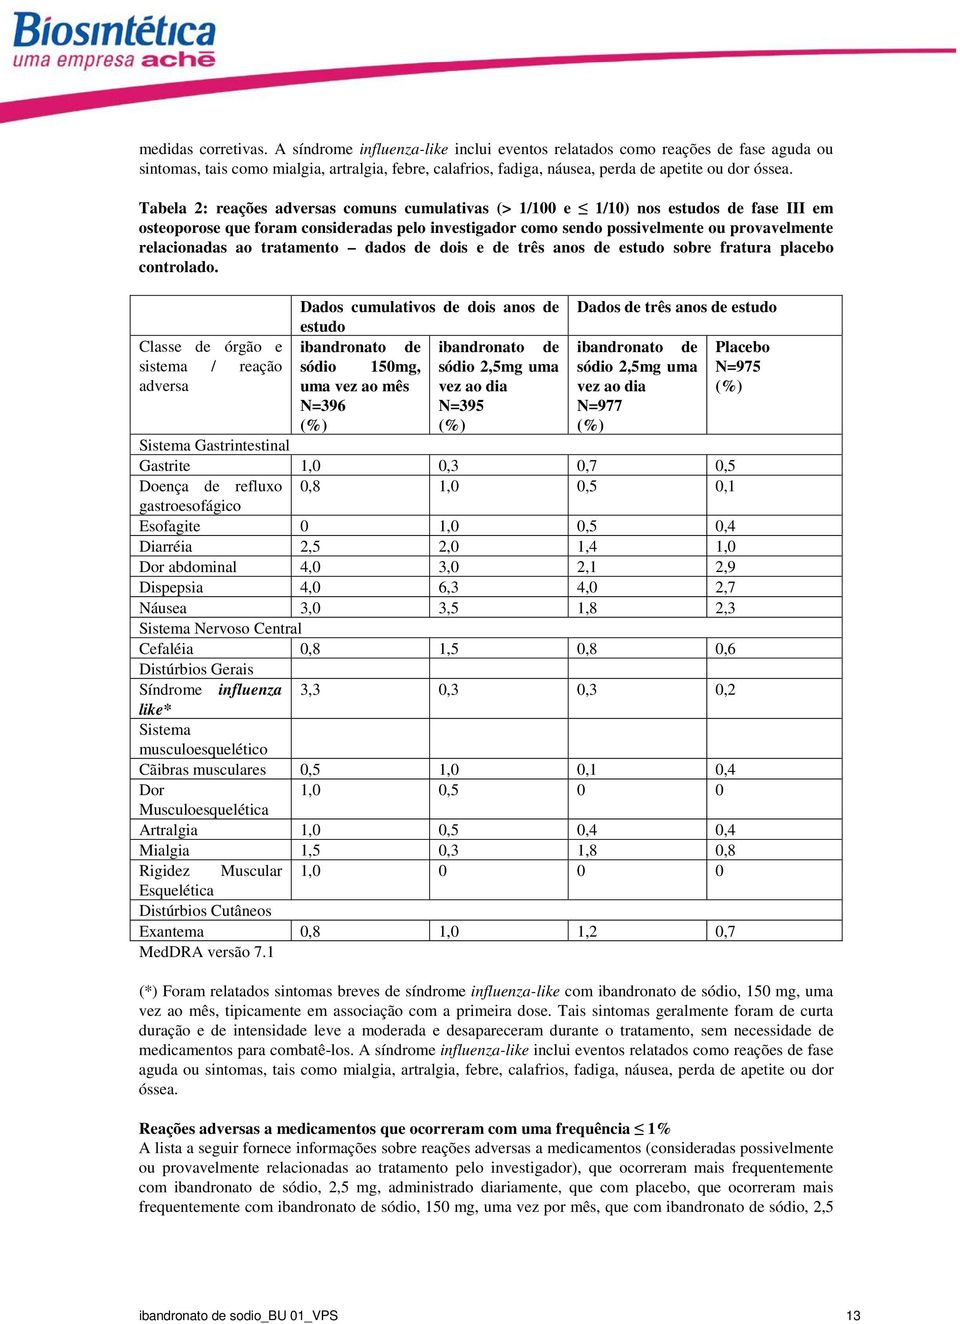 Tabela 2: reações adversas comuns cumulativas (> 1/100 e 1/10) nos estudos de fase III em osteoporose que foram consideradas pelo investigador como sendo possivelmente ou provavelmente relacionadas